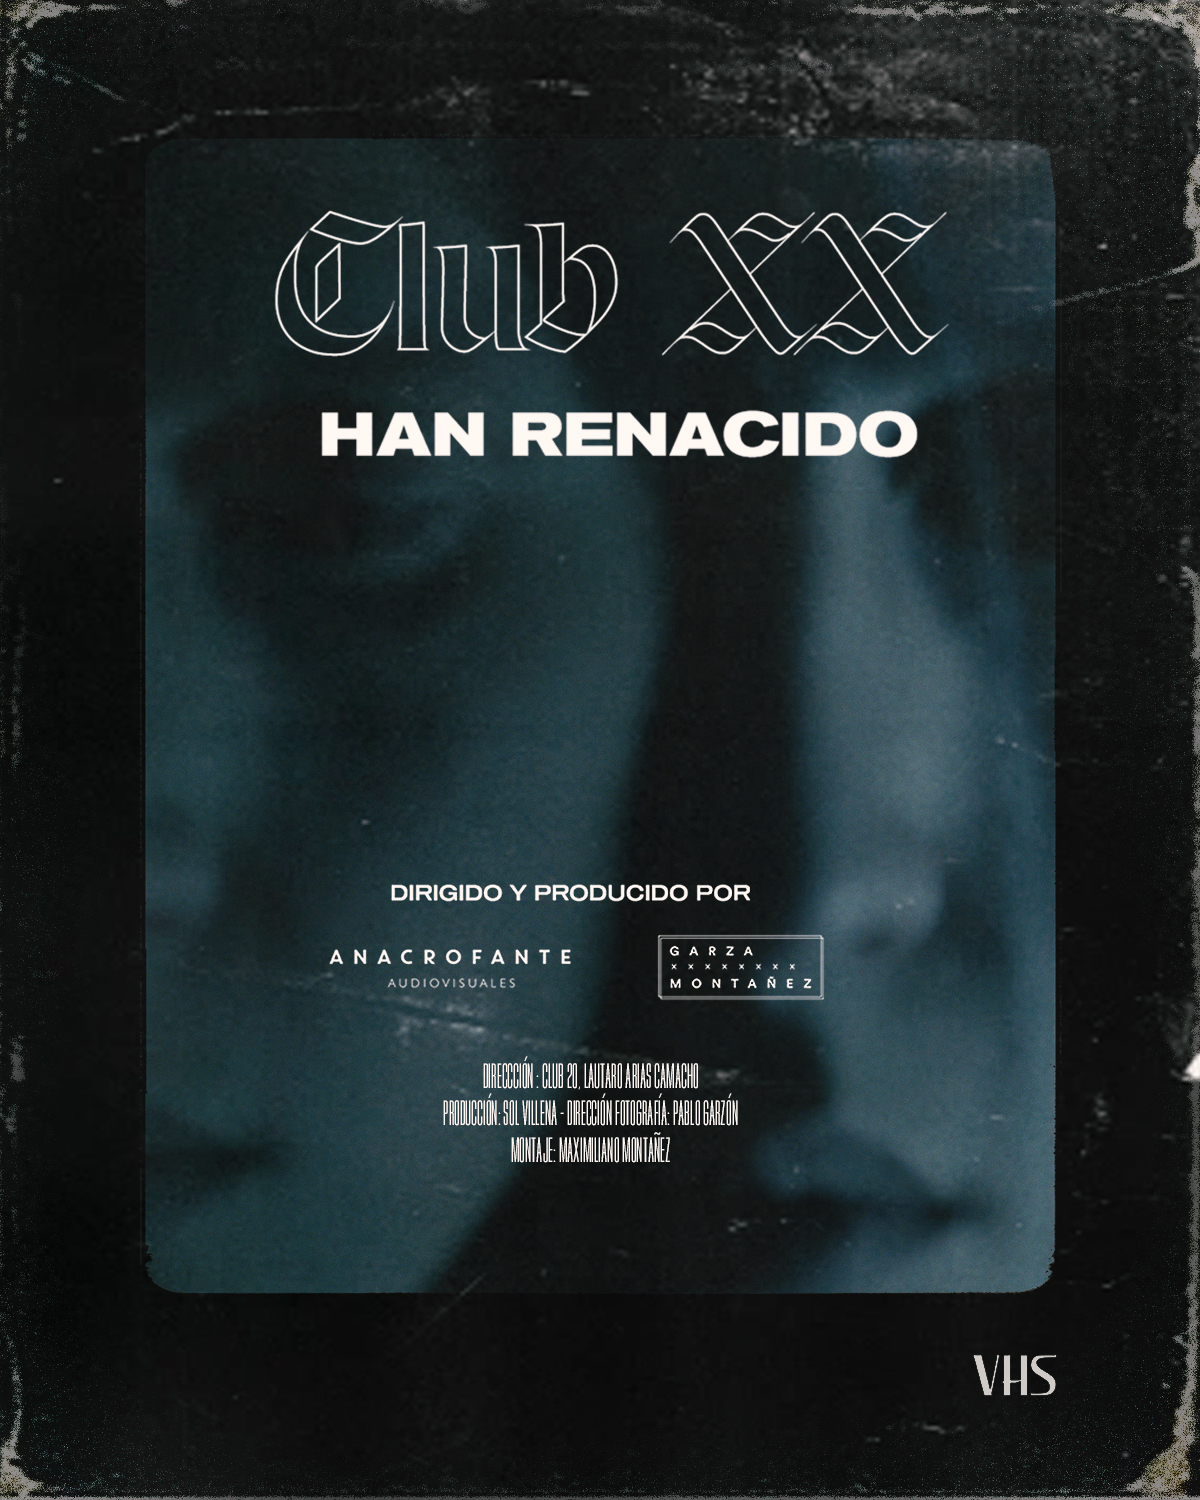 Han Renacido - Club 20 - OYR